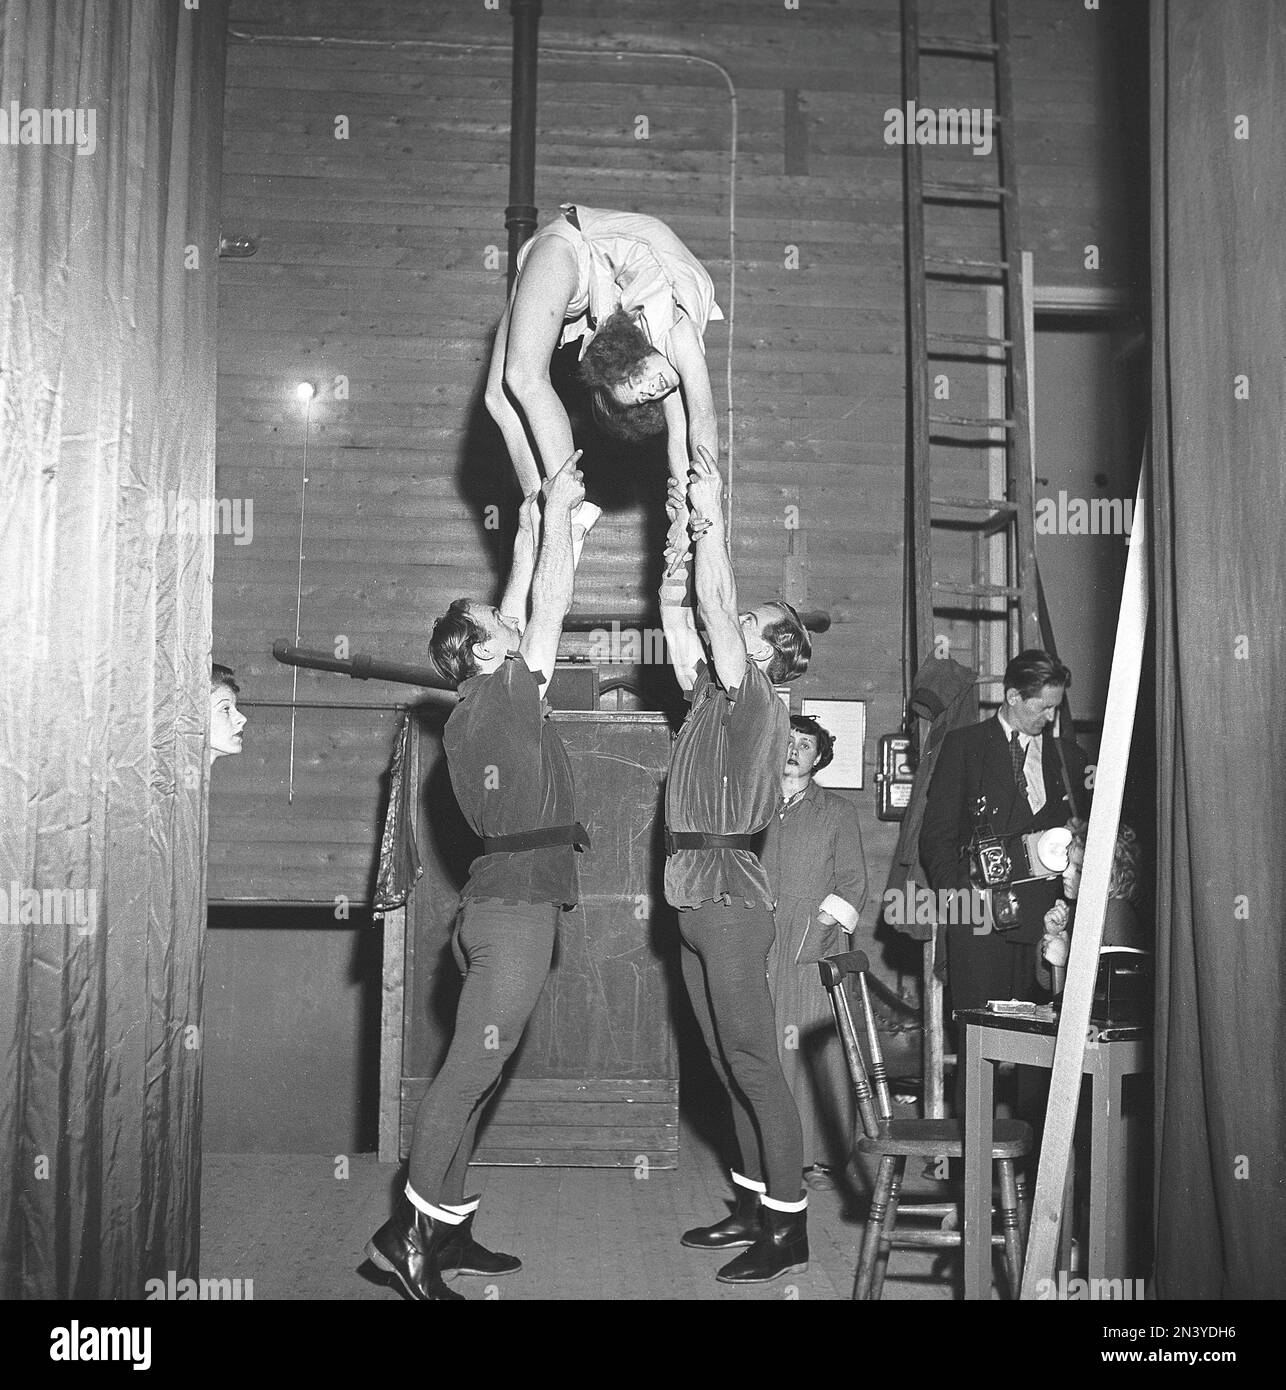 1950s spectacle acrobatique. Les trois acrobates pratiquent leur équilibre agissent derrière la scène avant la performance sur scène. Suède 1951 Kristoffersson réf. BE59-11 Banque D'Images